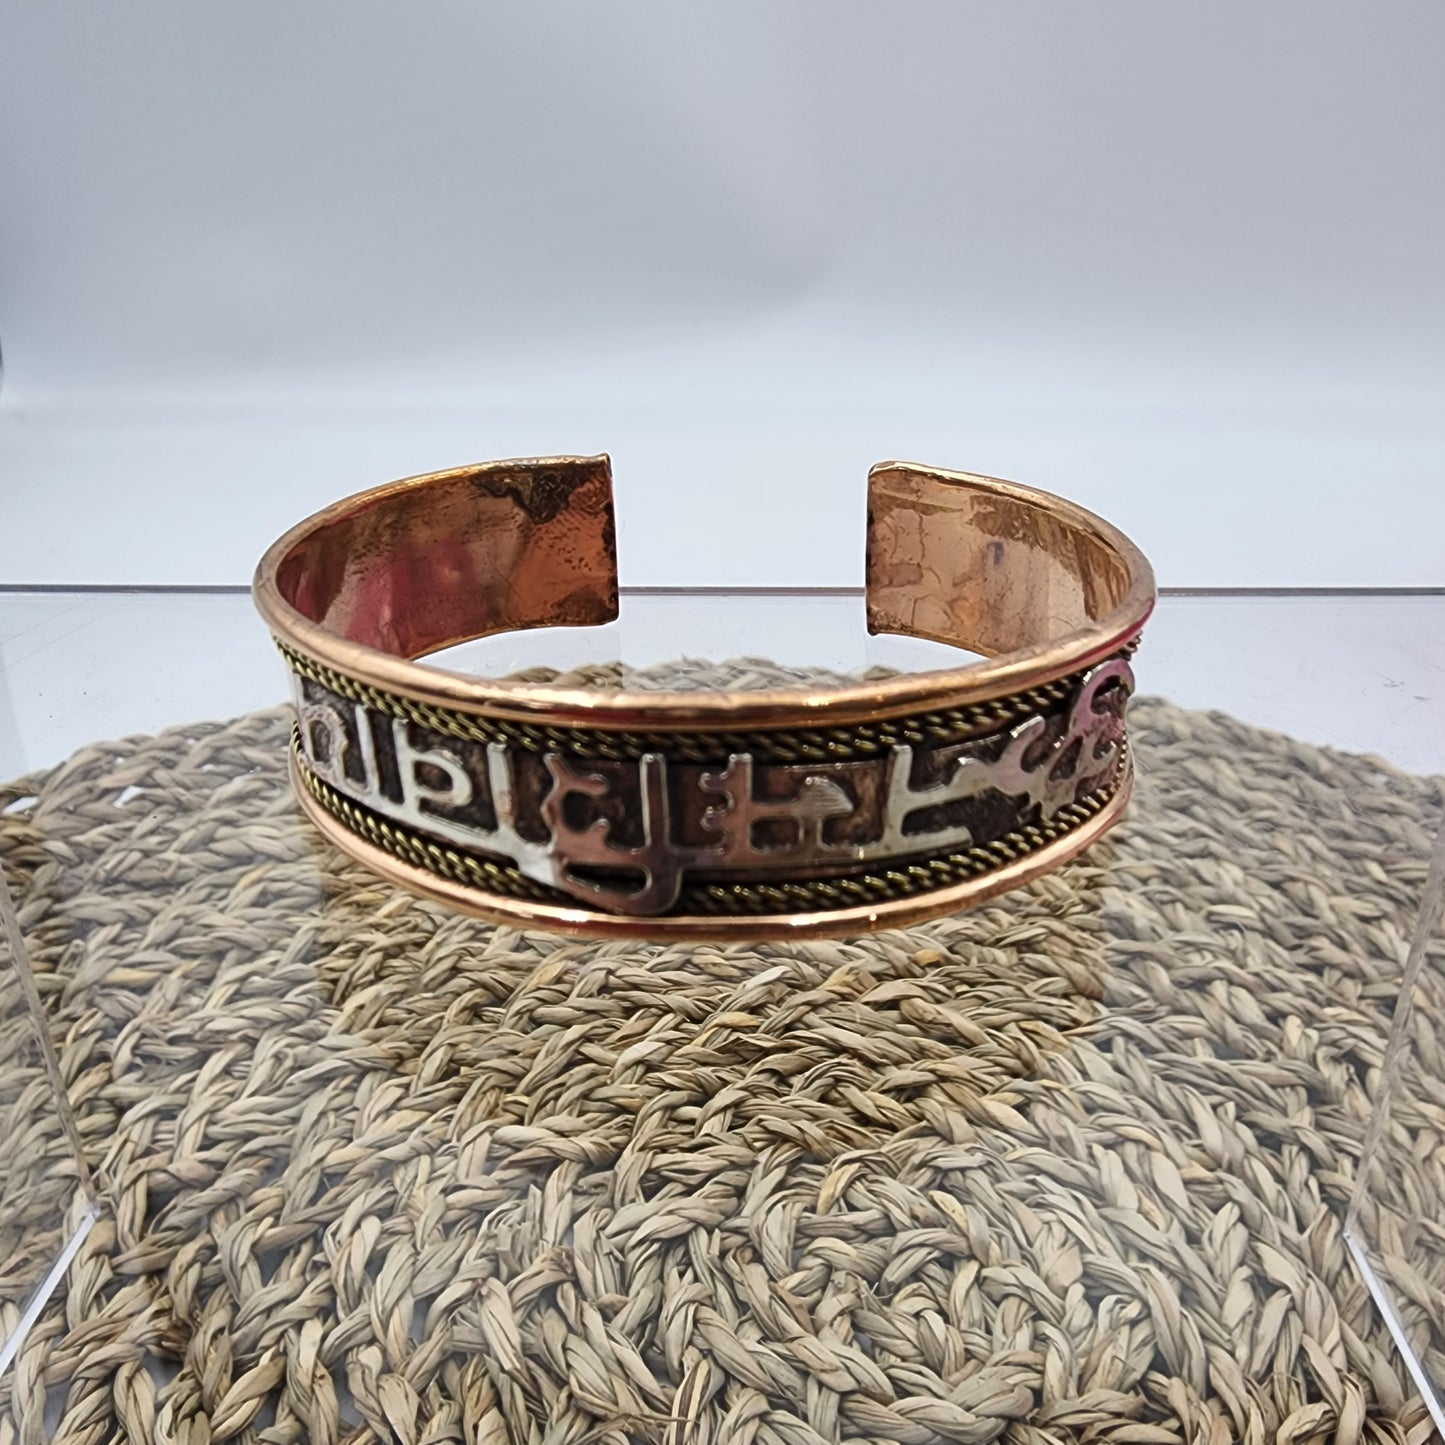 Sanskrit Copper Bracelet